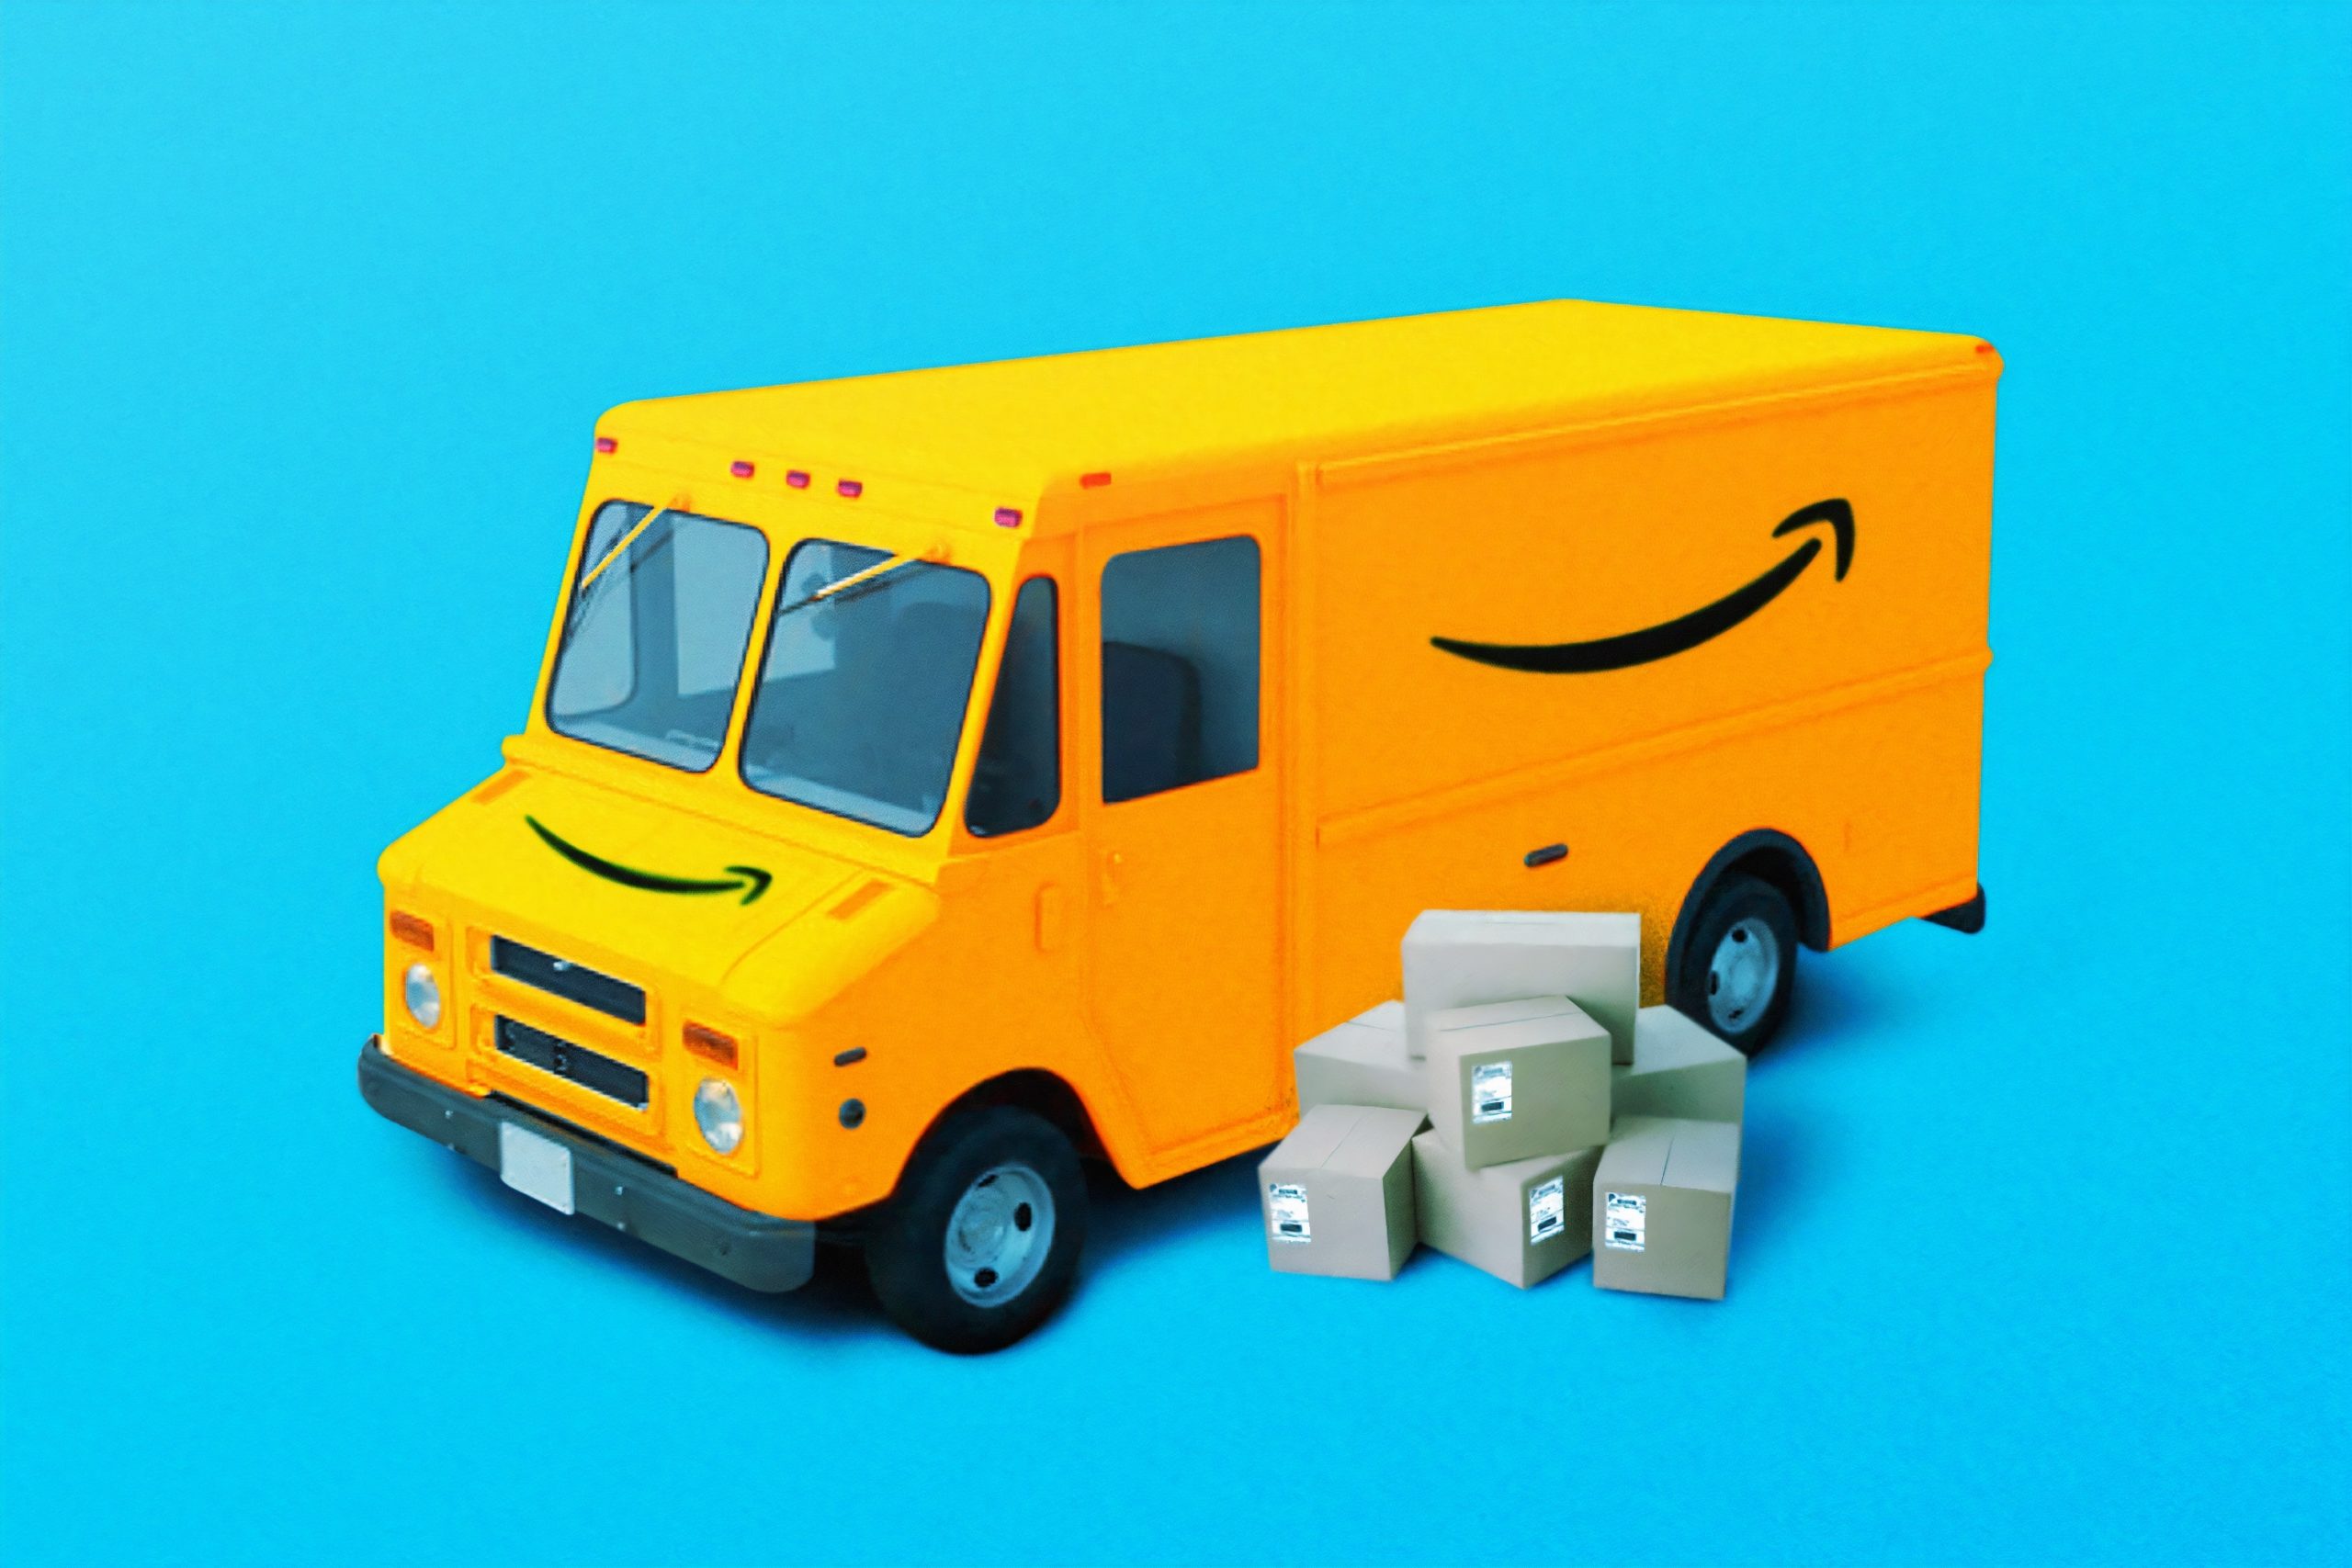 Amazonトラック